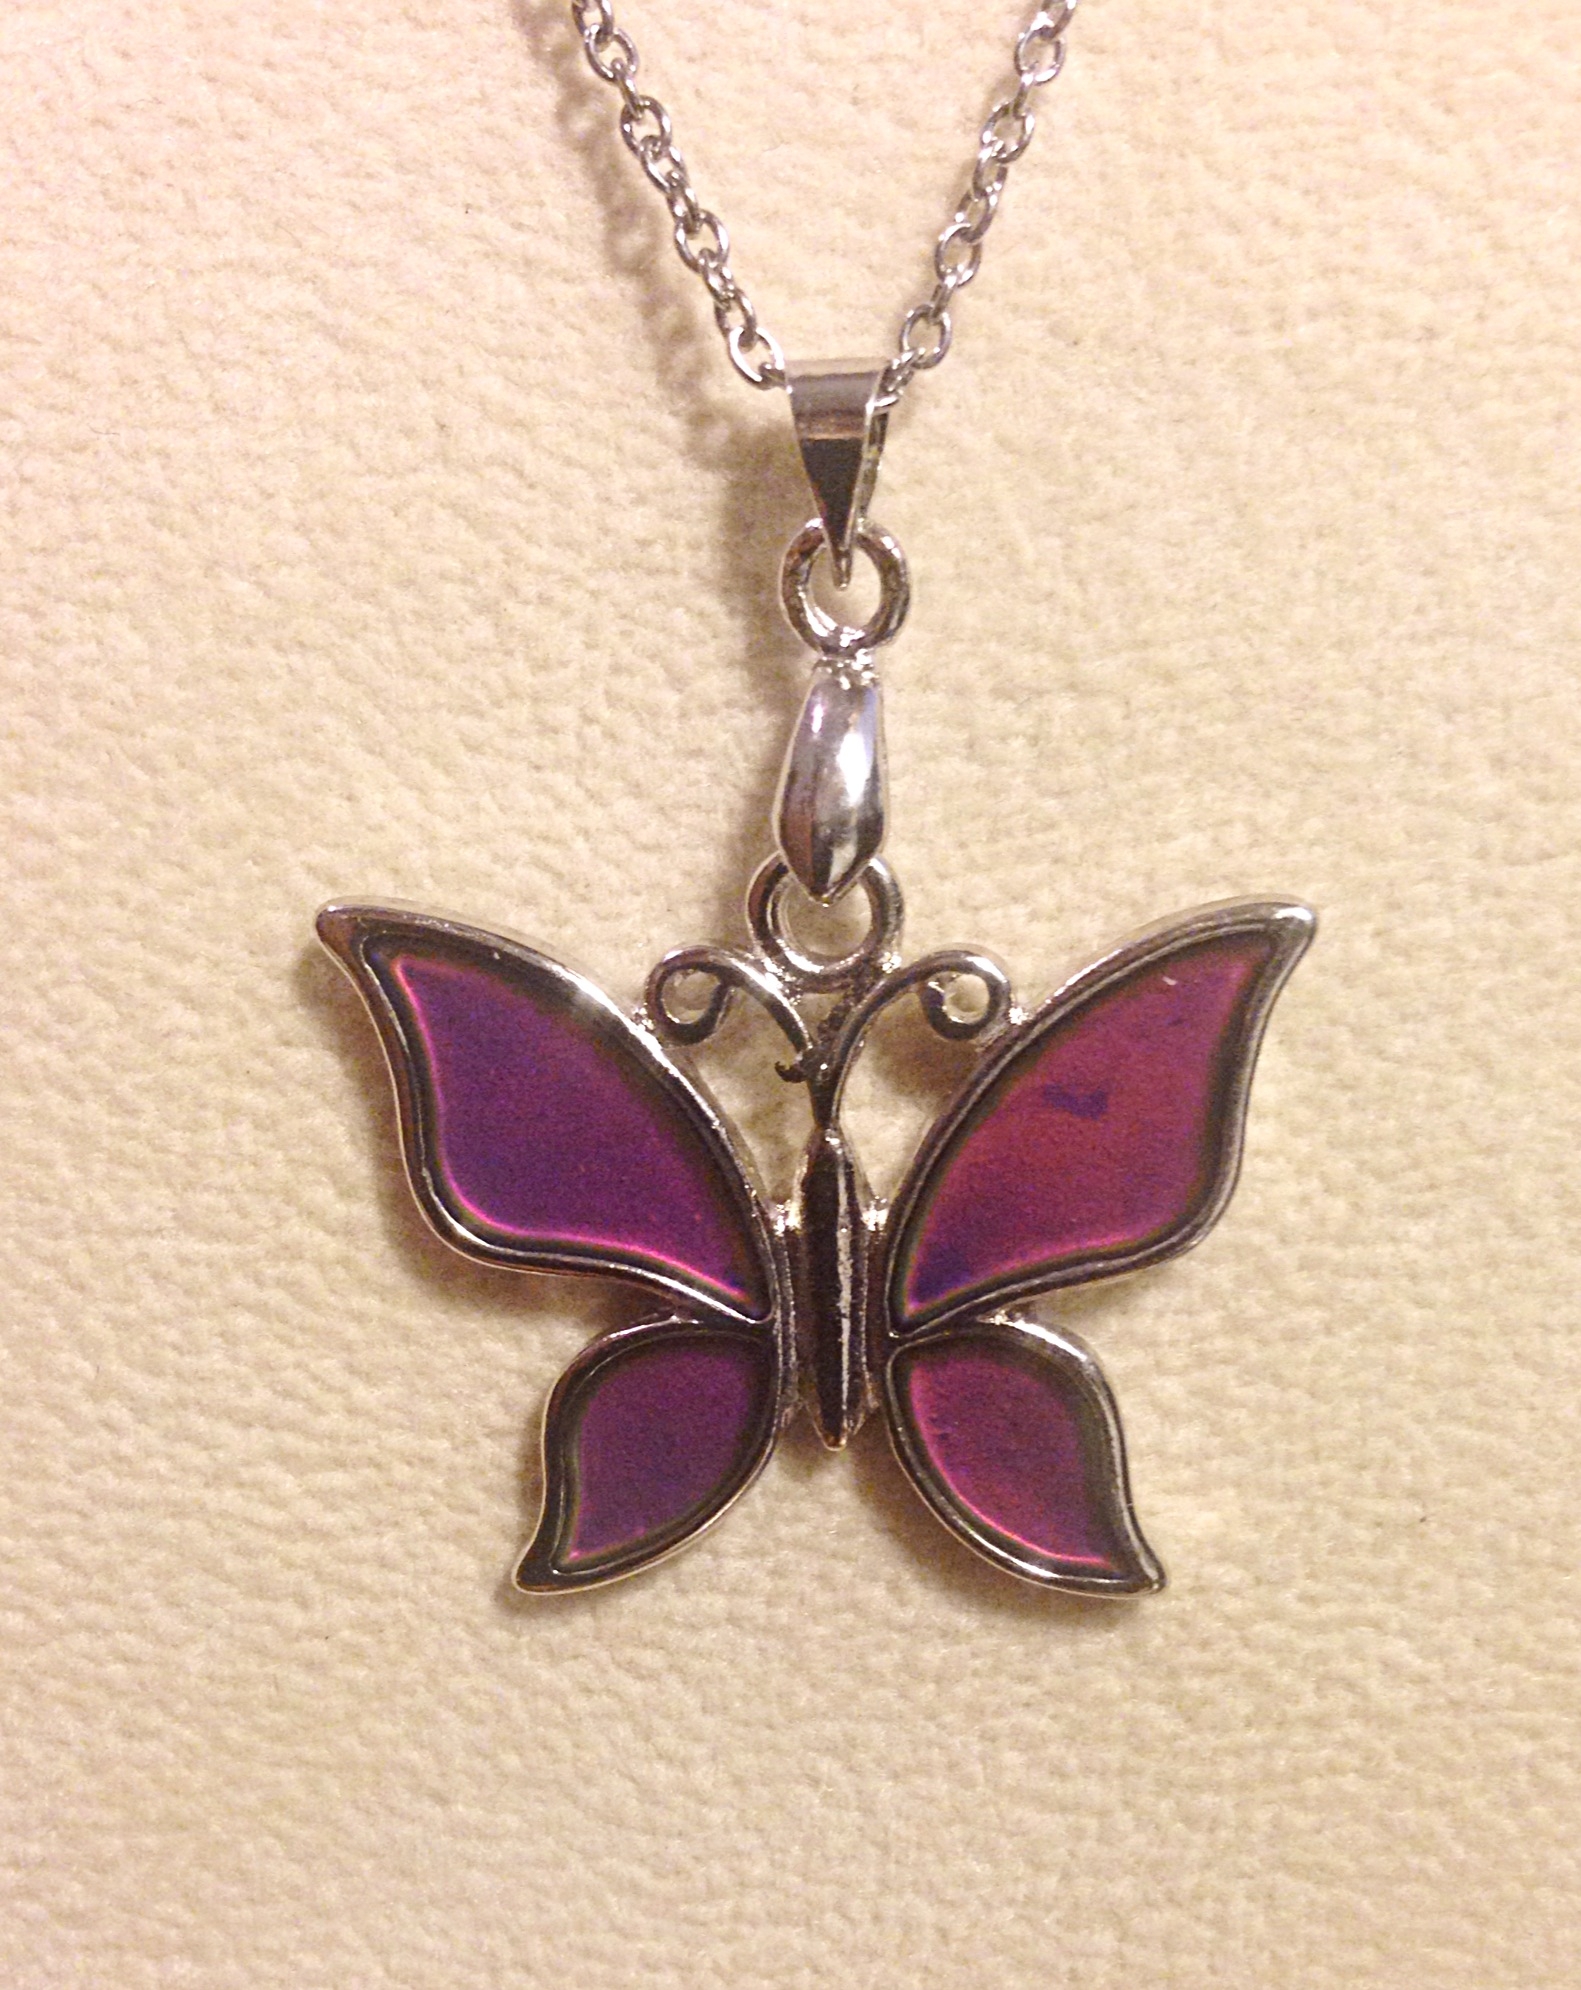 Mood Temperature Sensitive Color Change Necklace Butterfly Pendant Charms LA